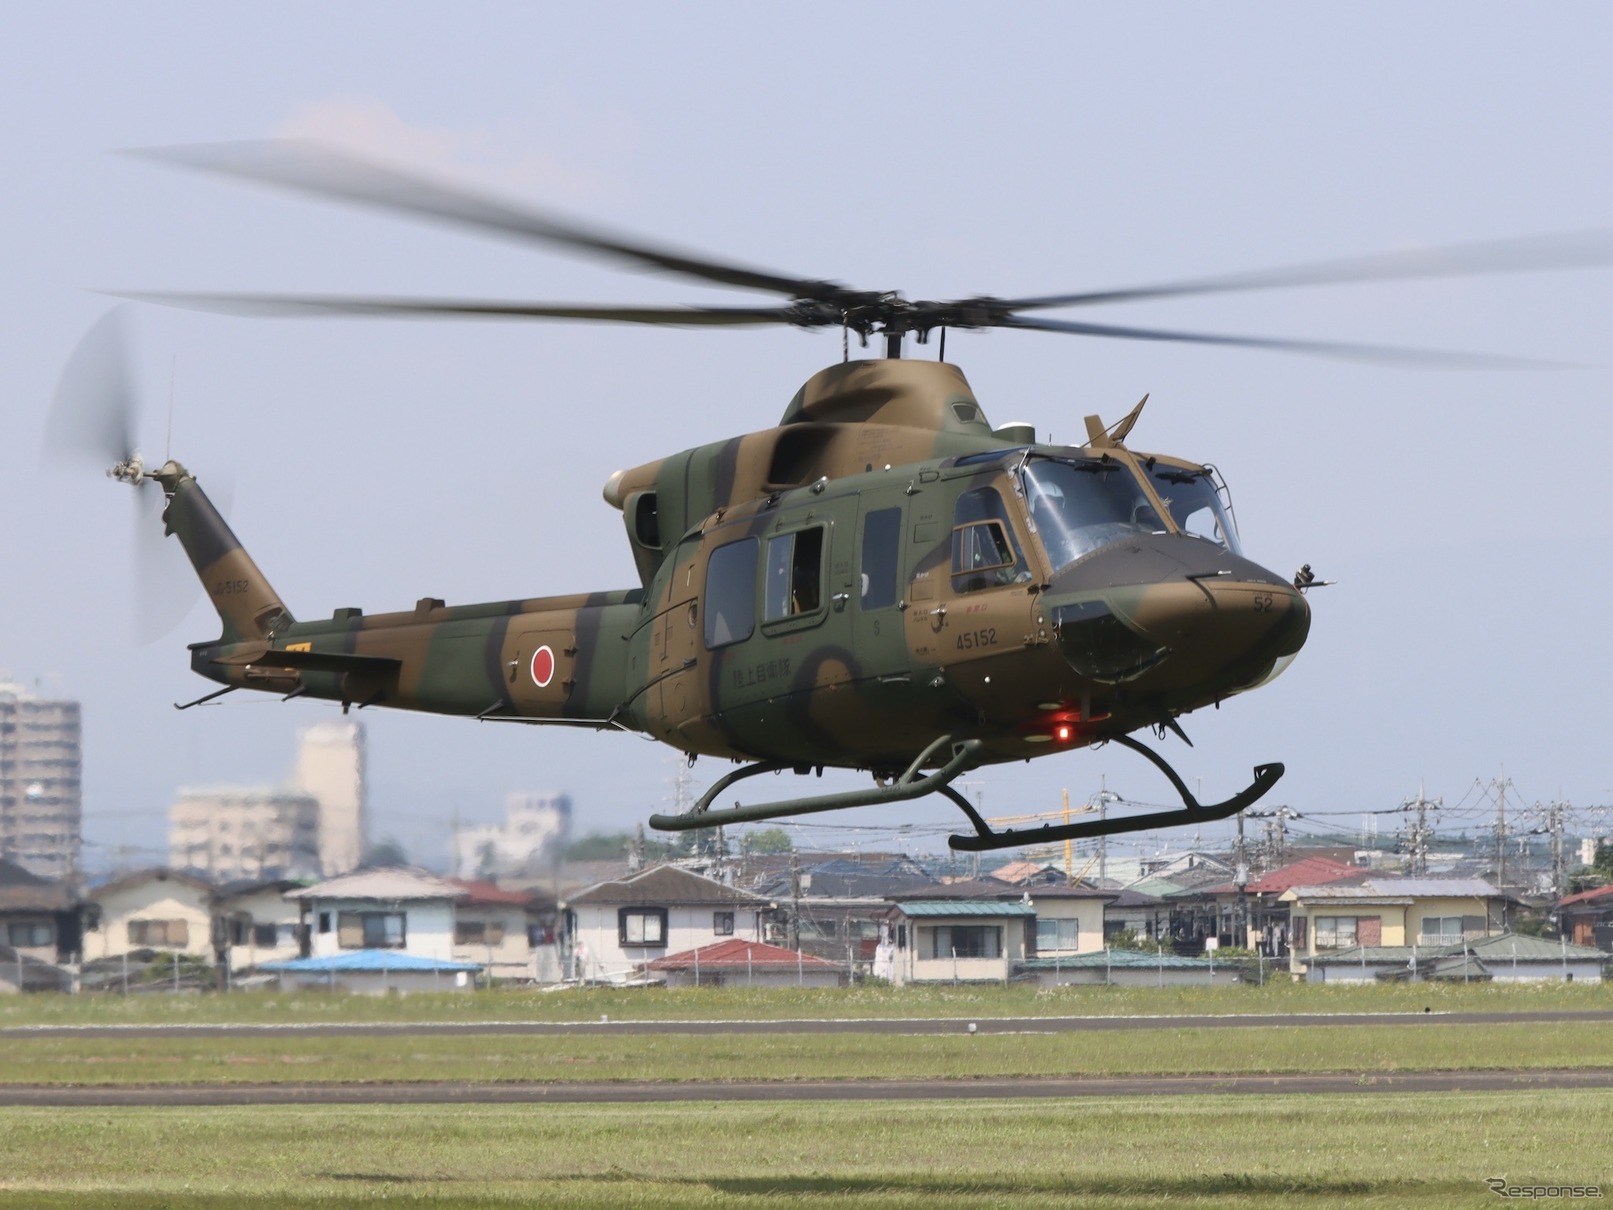 スバル、陸上自衛隊ヘリコプター UH-2 量産初号機の初飛行を実施